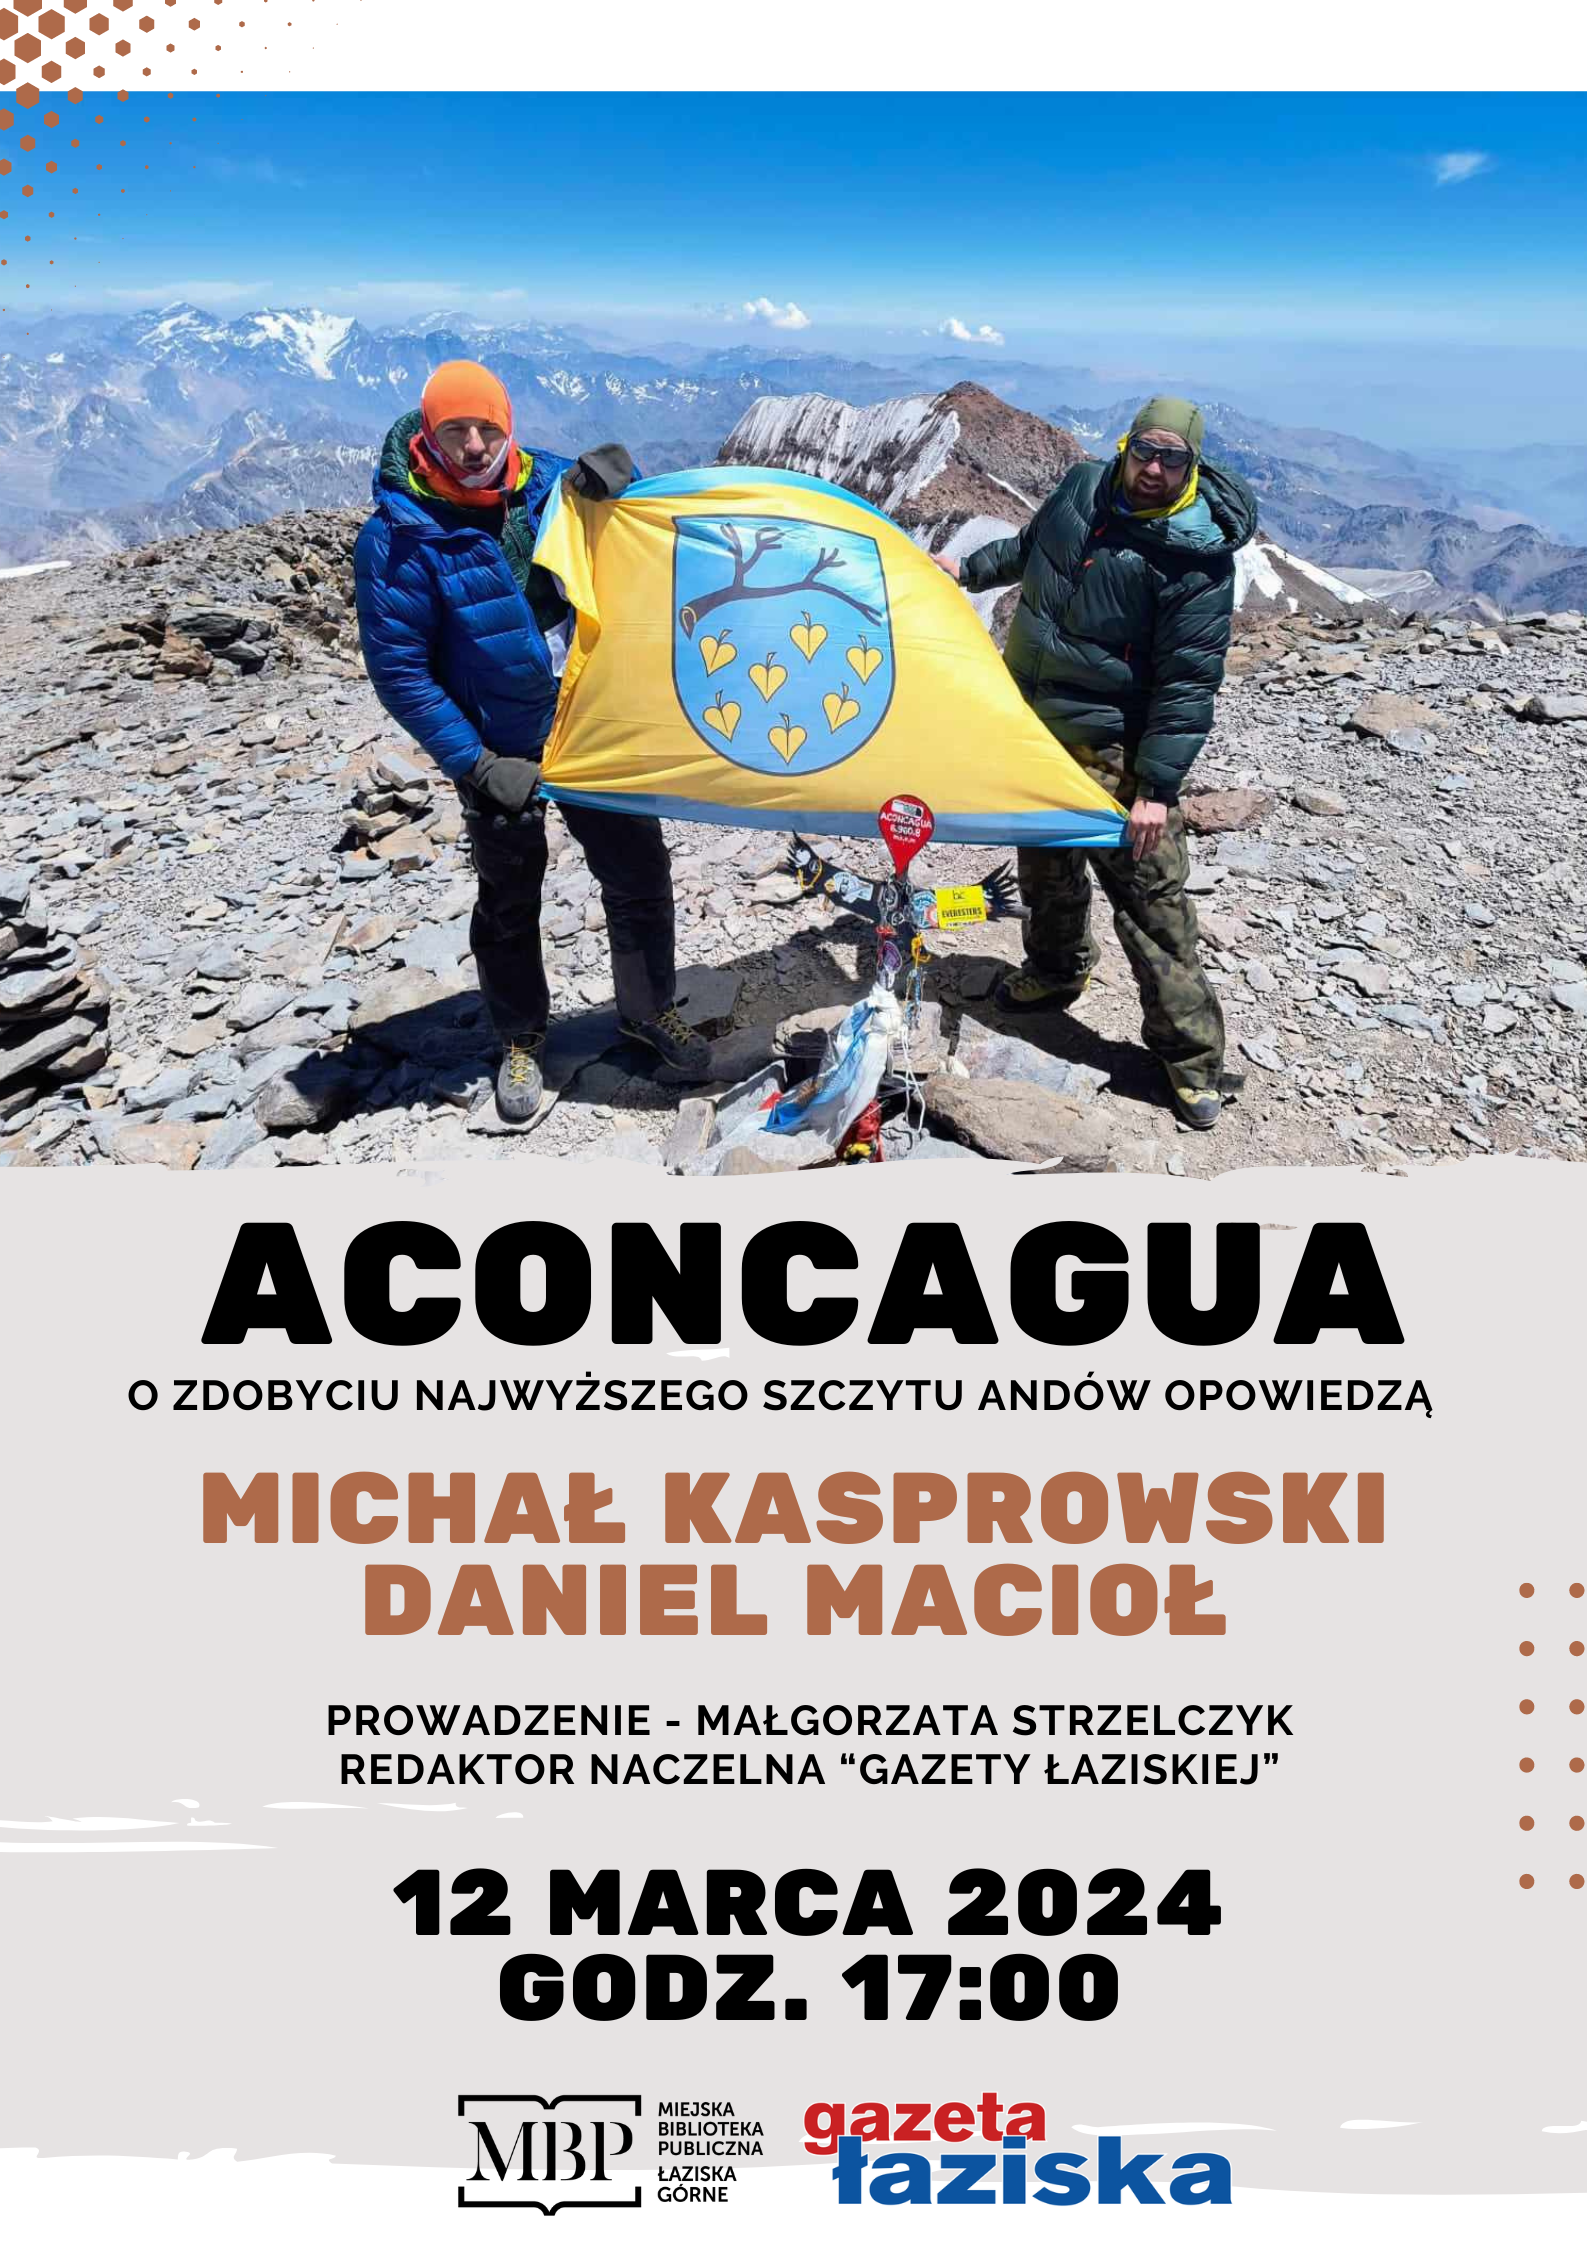 Plakat spotkania Aconcagua. Dwie osoby na szczycie góry trzymający flagę